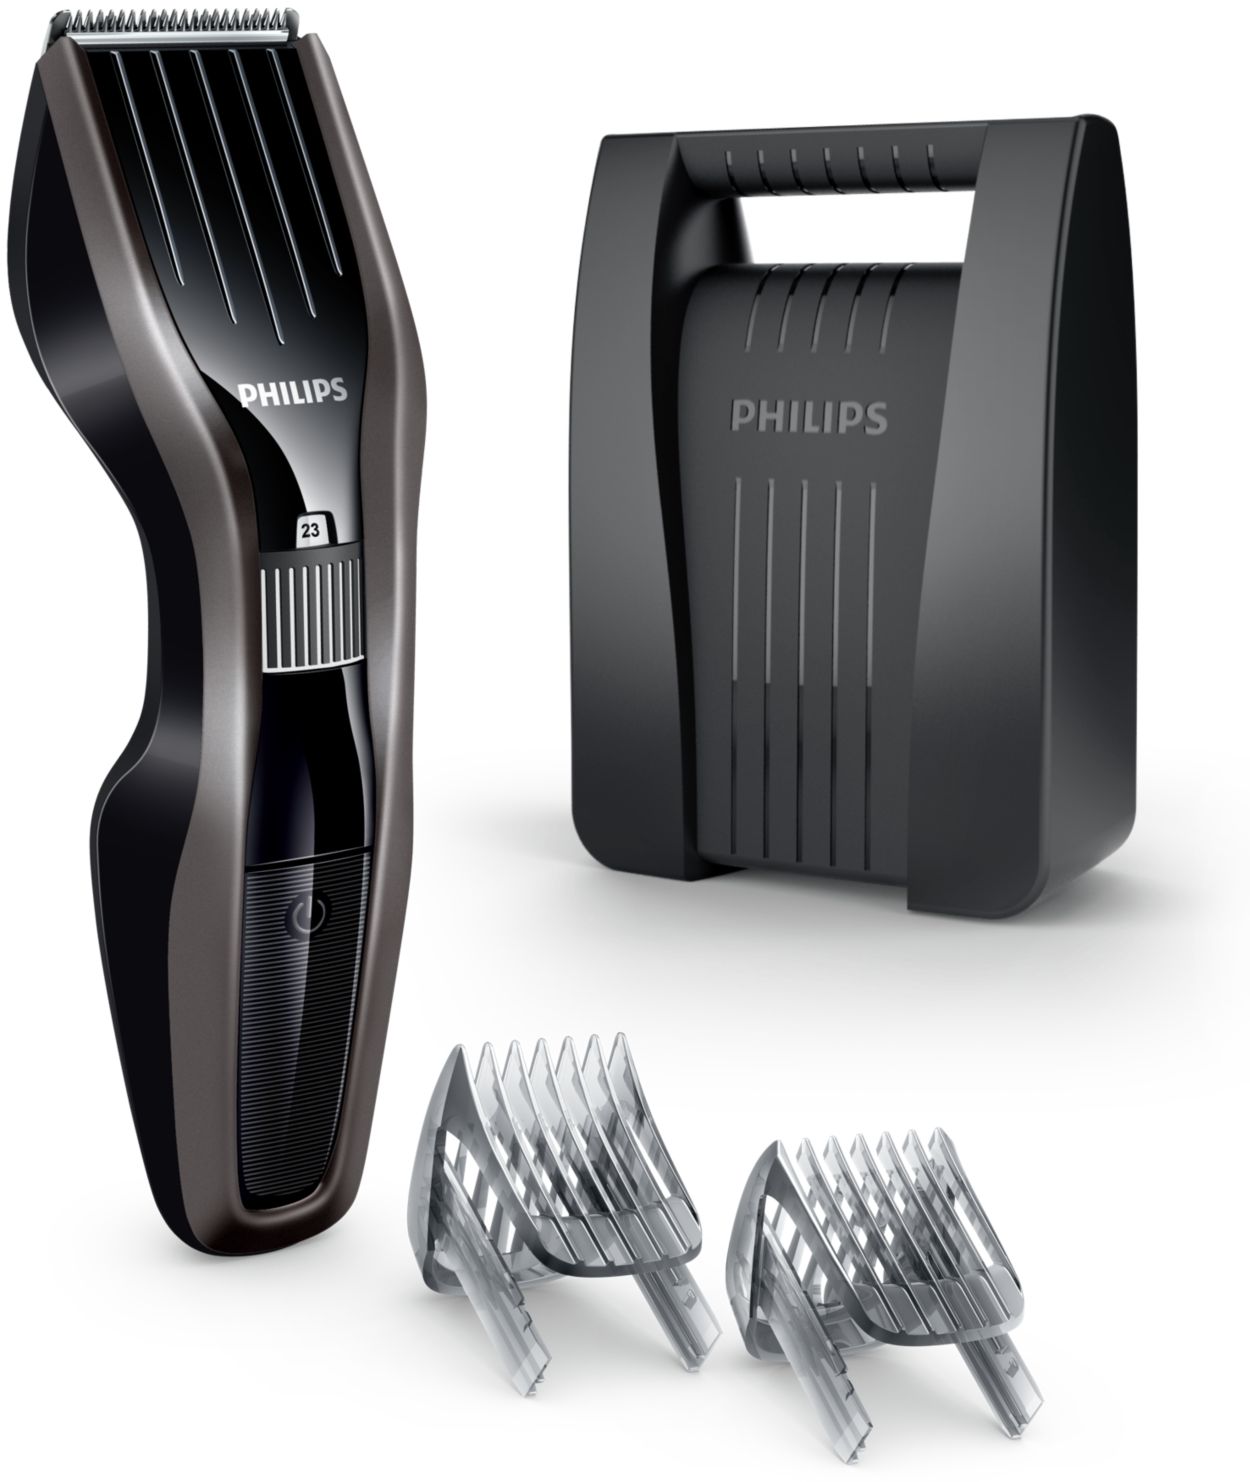 Ножи для машинки филипс. Philips hc5438. Philips hc5438 Series 5000. Philips 5438. Hc5438 насадка.